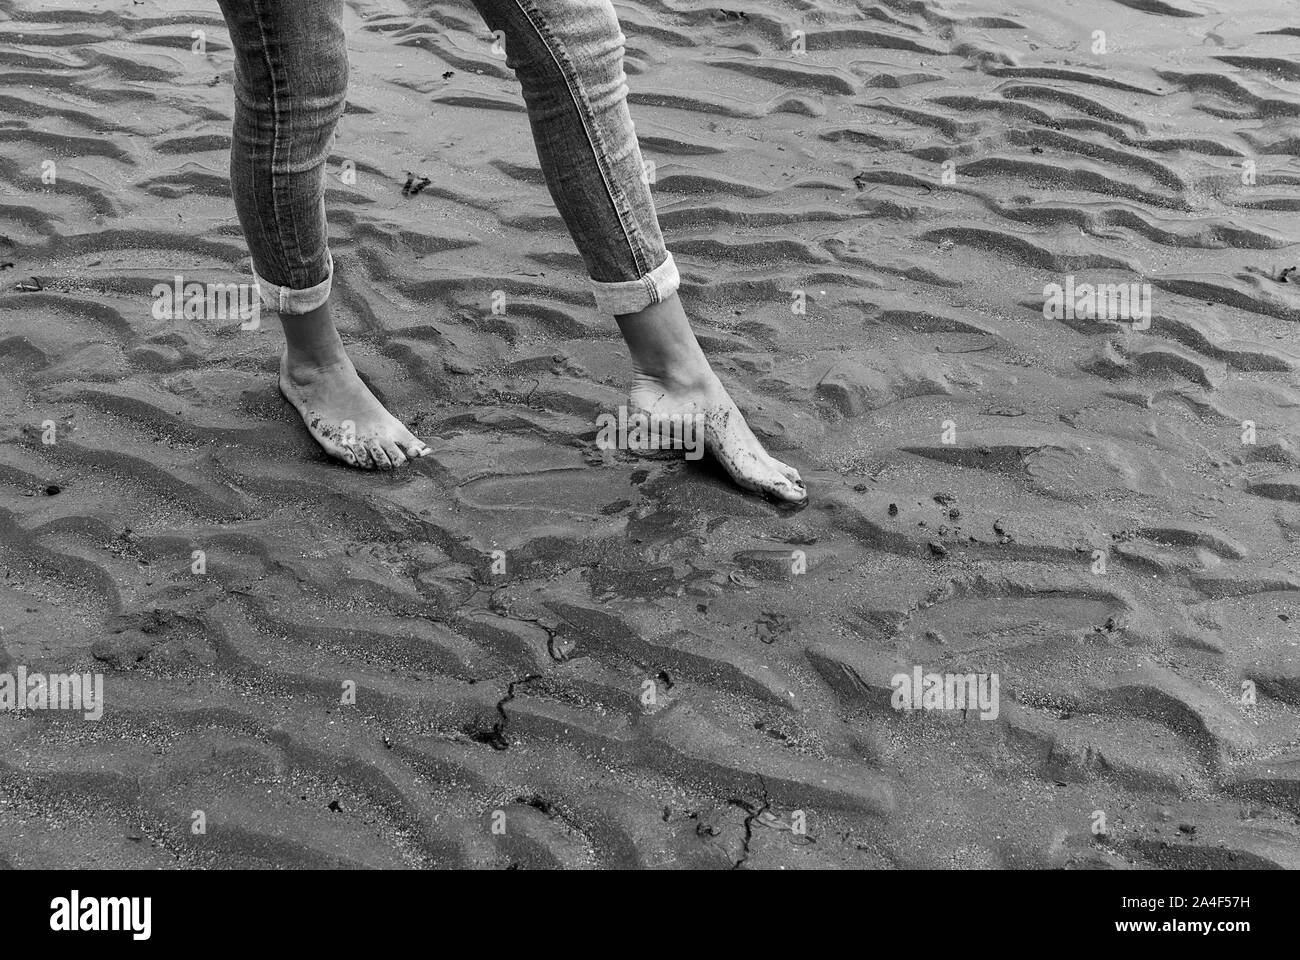 Mujer joven caminando y jugando en la playa de arena y dejar huellas en la playa. Killbrittain, Kilbrittain playa, Irlanda. Foto de stock